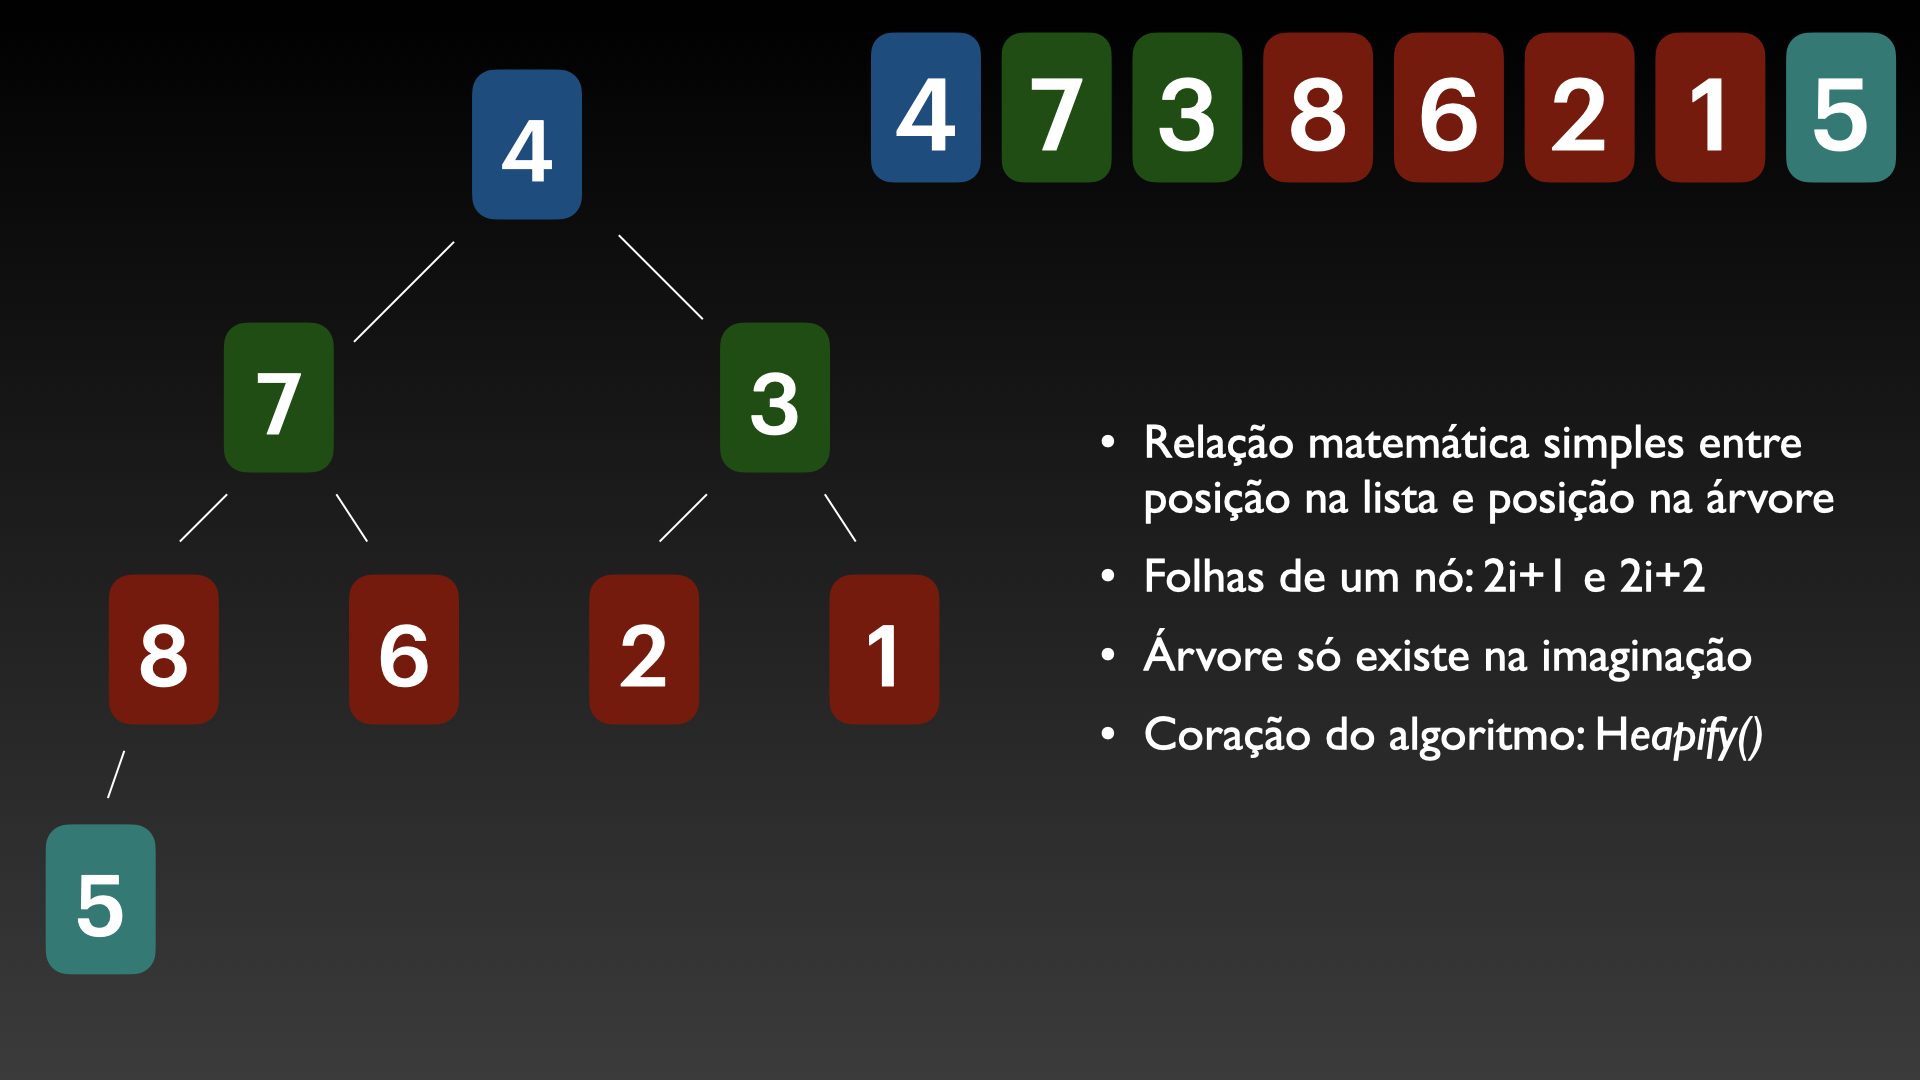 Figura 1: Conceito básico do heap sort: imaginar uma árvore binária implícita na lista